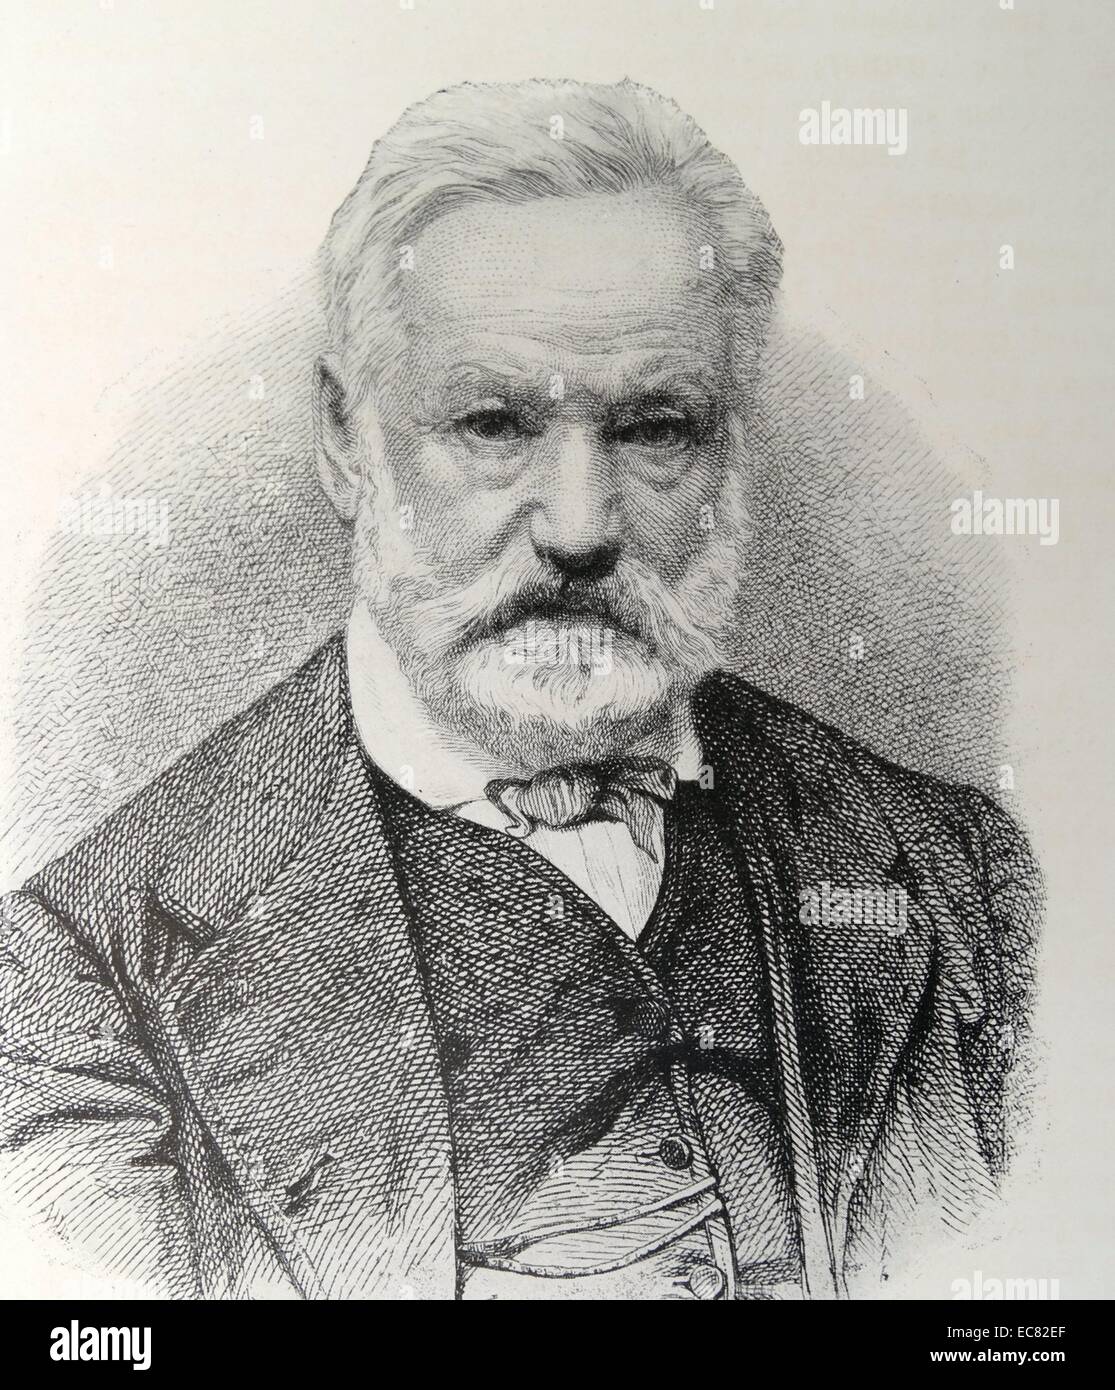 Incisione di Victor Hugo (1802-1885) poeta francese, scrittore e drammaturgo di movimento romantico. Datata 1869 Foto Stock